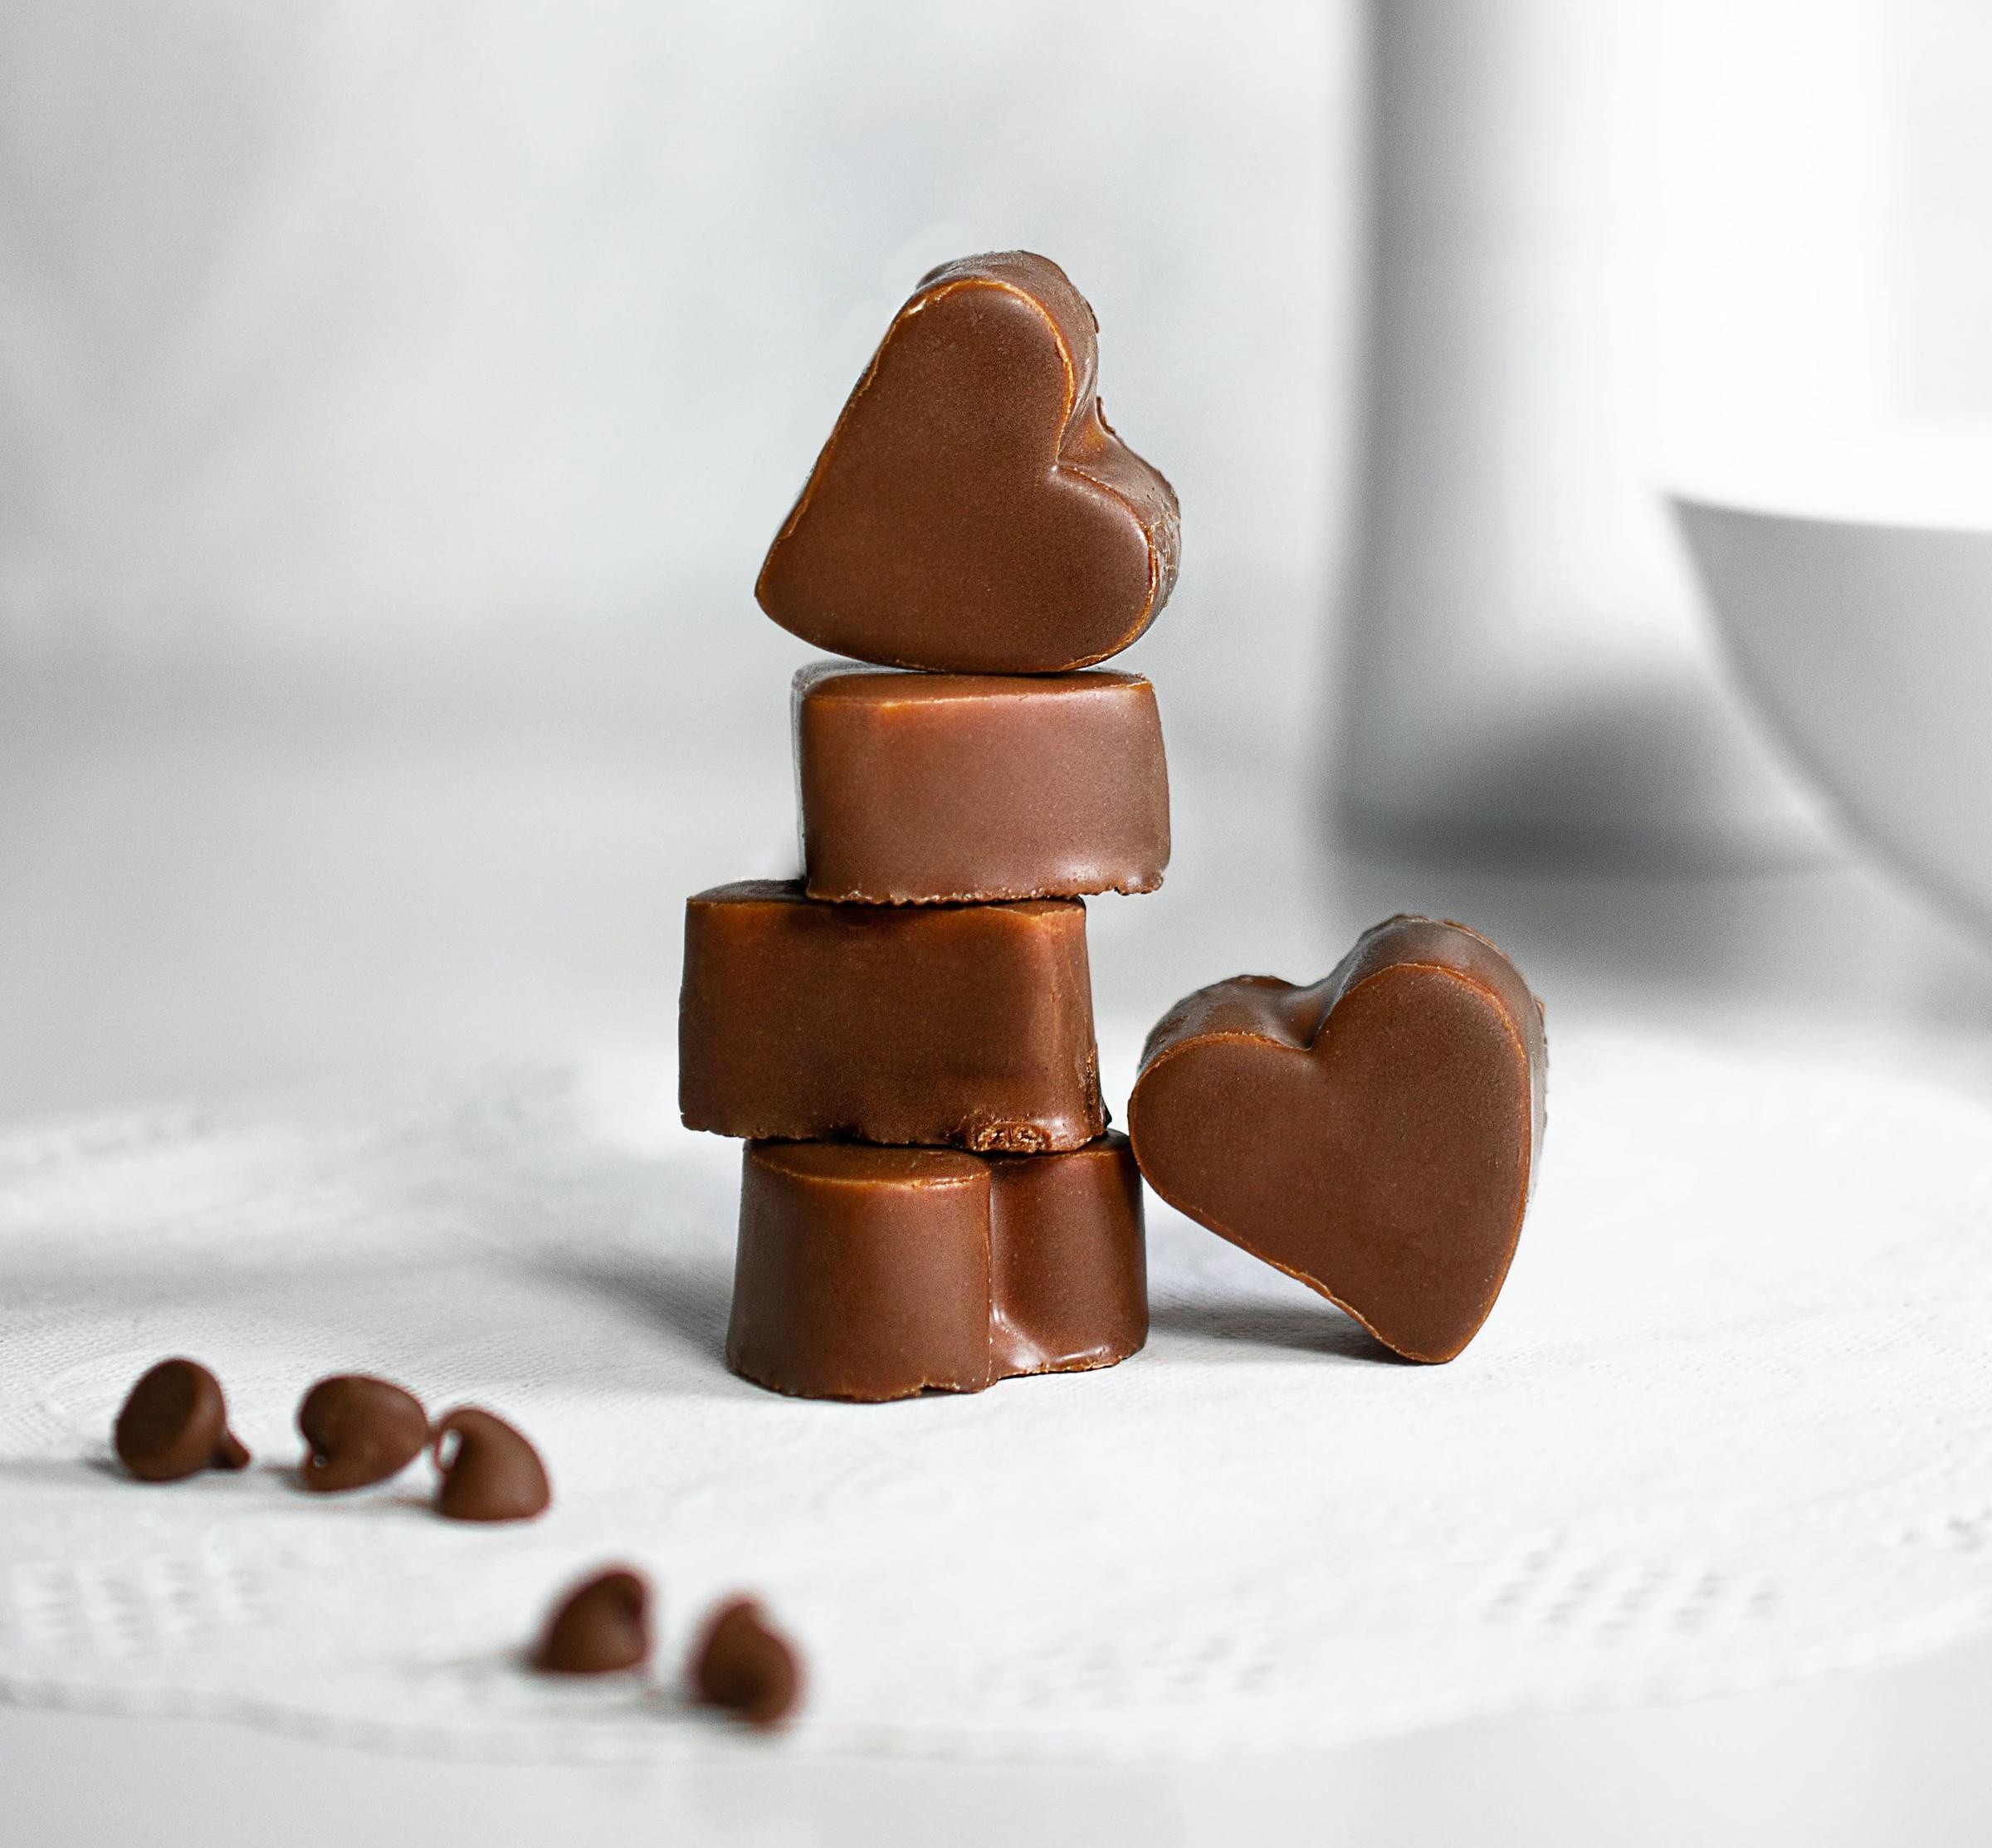 Bombas de Chocolate Real - ¿Ya tienes tu regalo de san Valentín